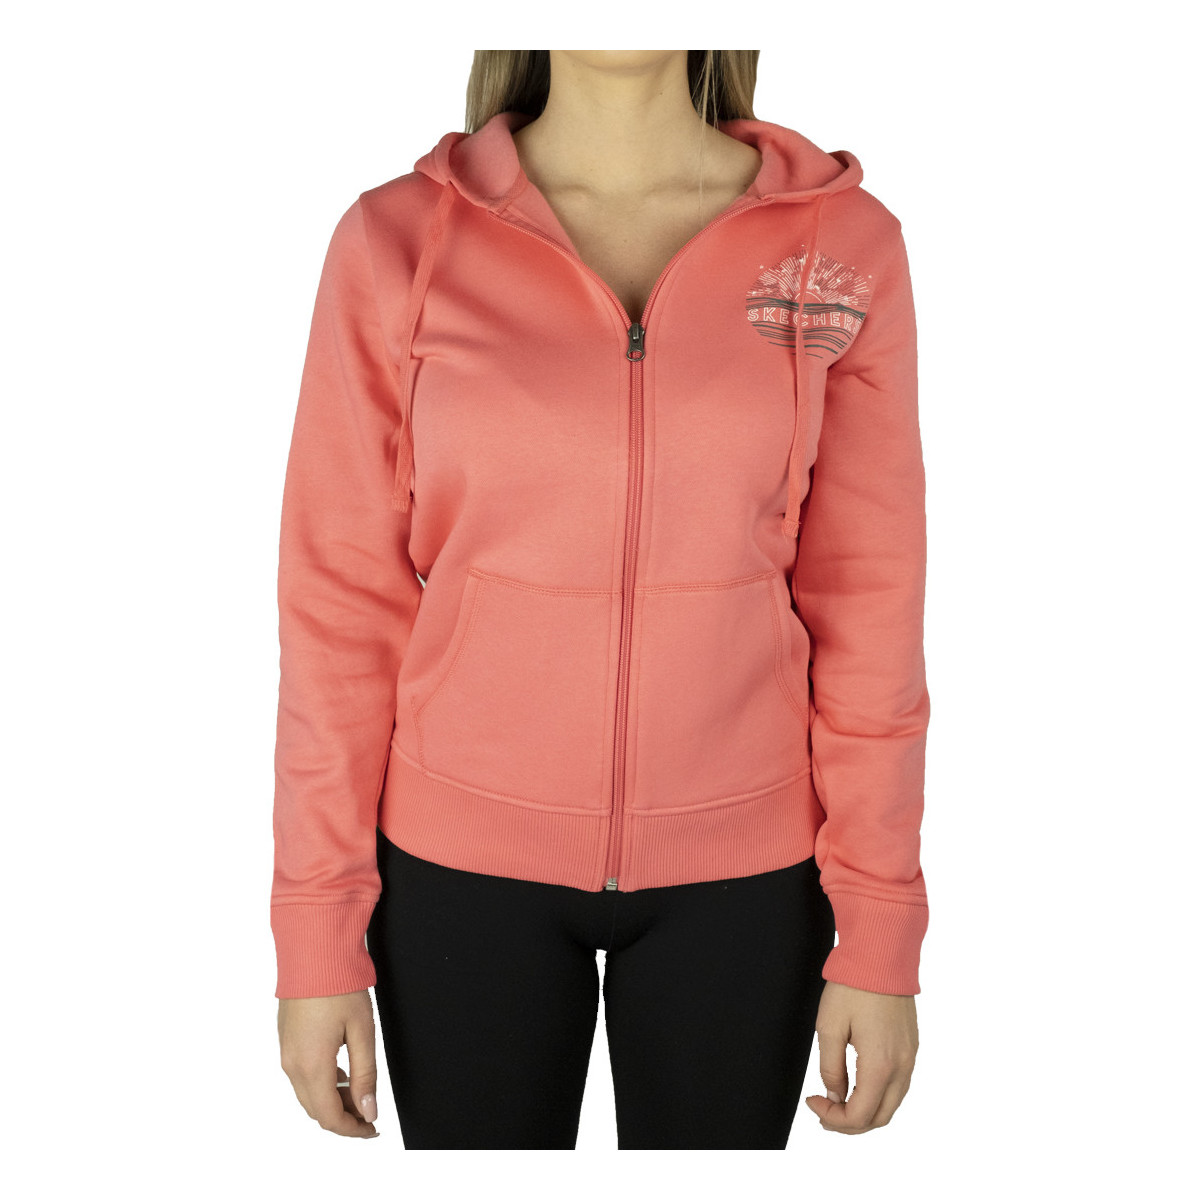 vaatteet Naiset Ulkoilutakki Skechers Full Zip Hoodie Vaaleanpunainen